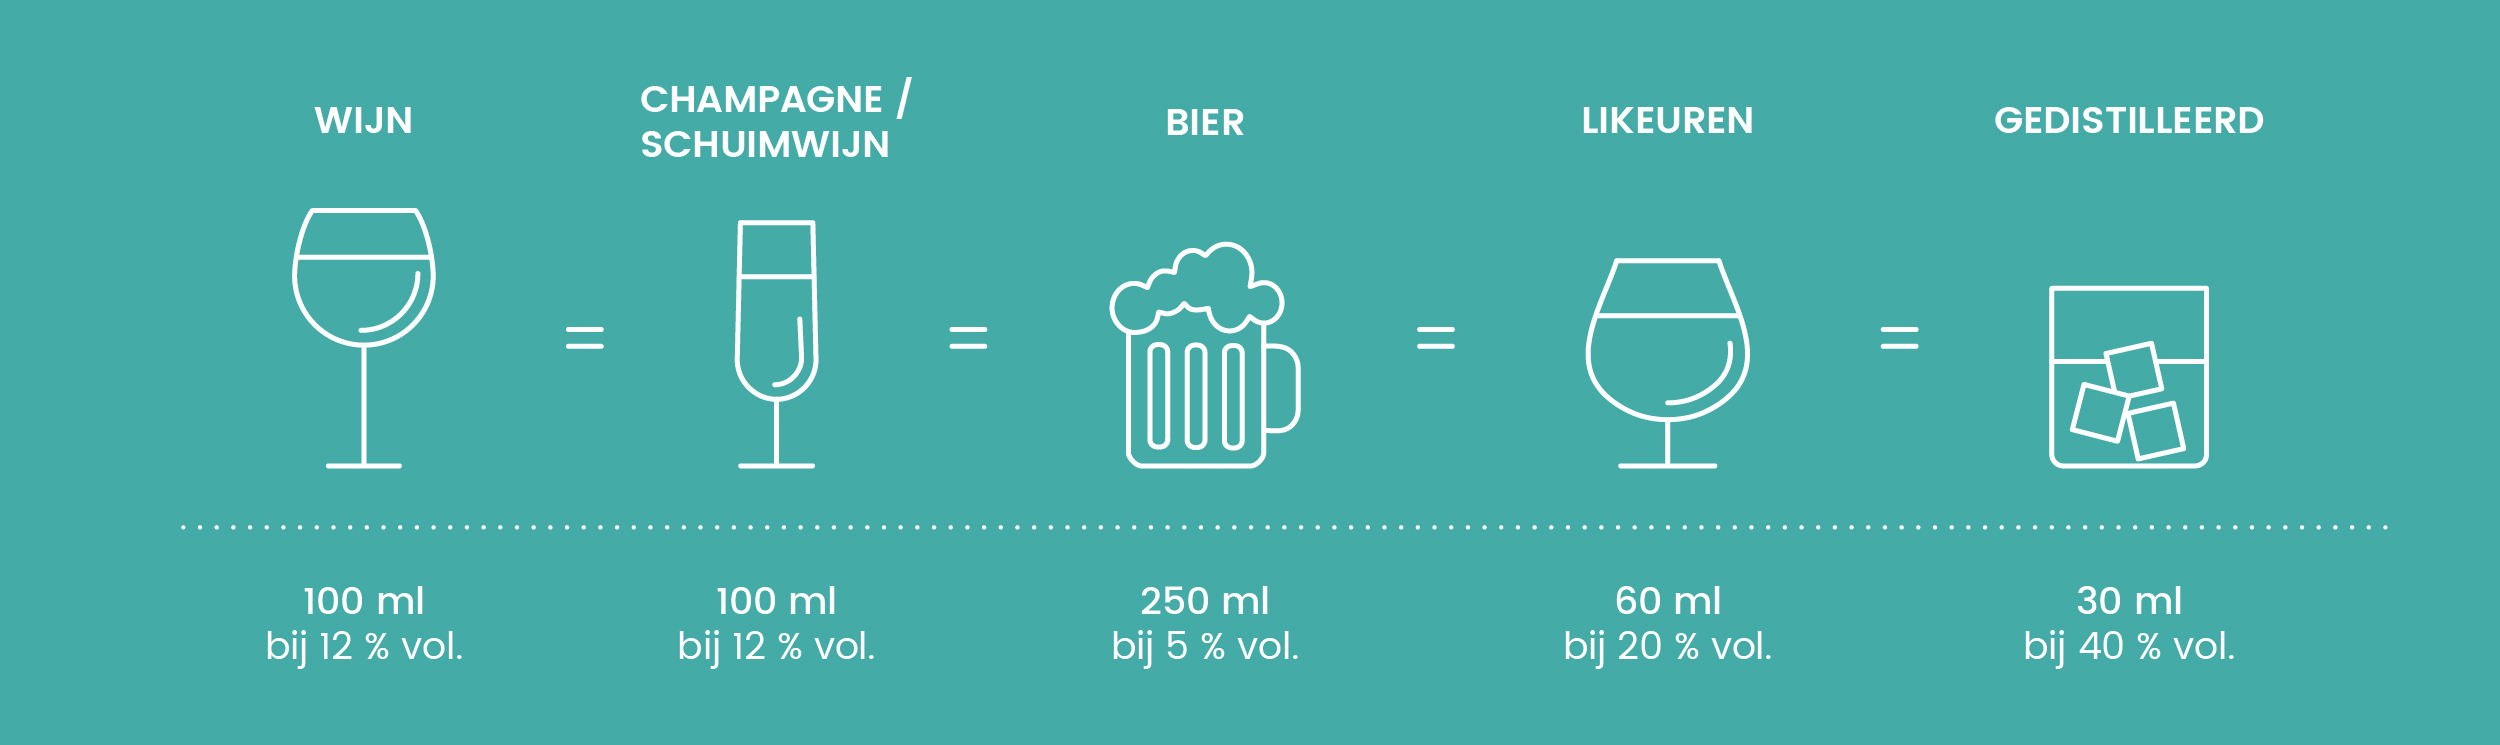 info-alcohol-vergelijking-NL